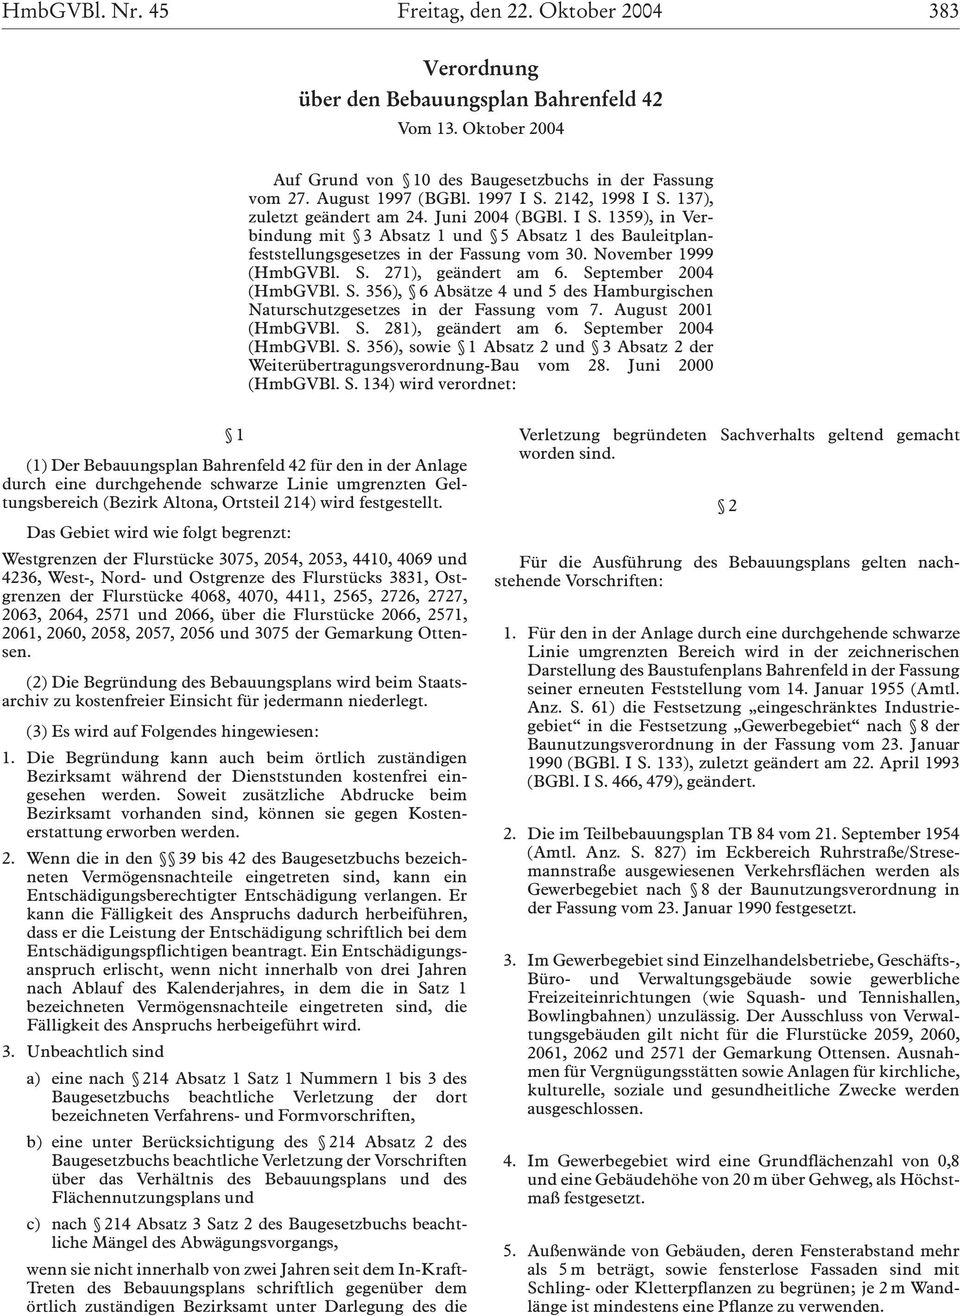 November 1999 (HmbGVBl. S. 271), geändert am 6. September 2004 (HmbGVBl. S. 356), 6 Absätze 4 und 5 des Hamburgischen Naturschutzgesetzes in der Fassung vom 7. August 2001 (HmbGVBl. S. 281), geändert am 6.